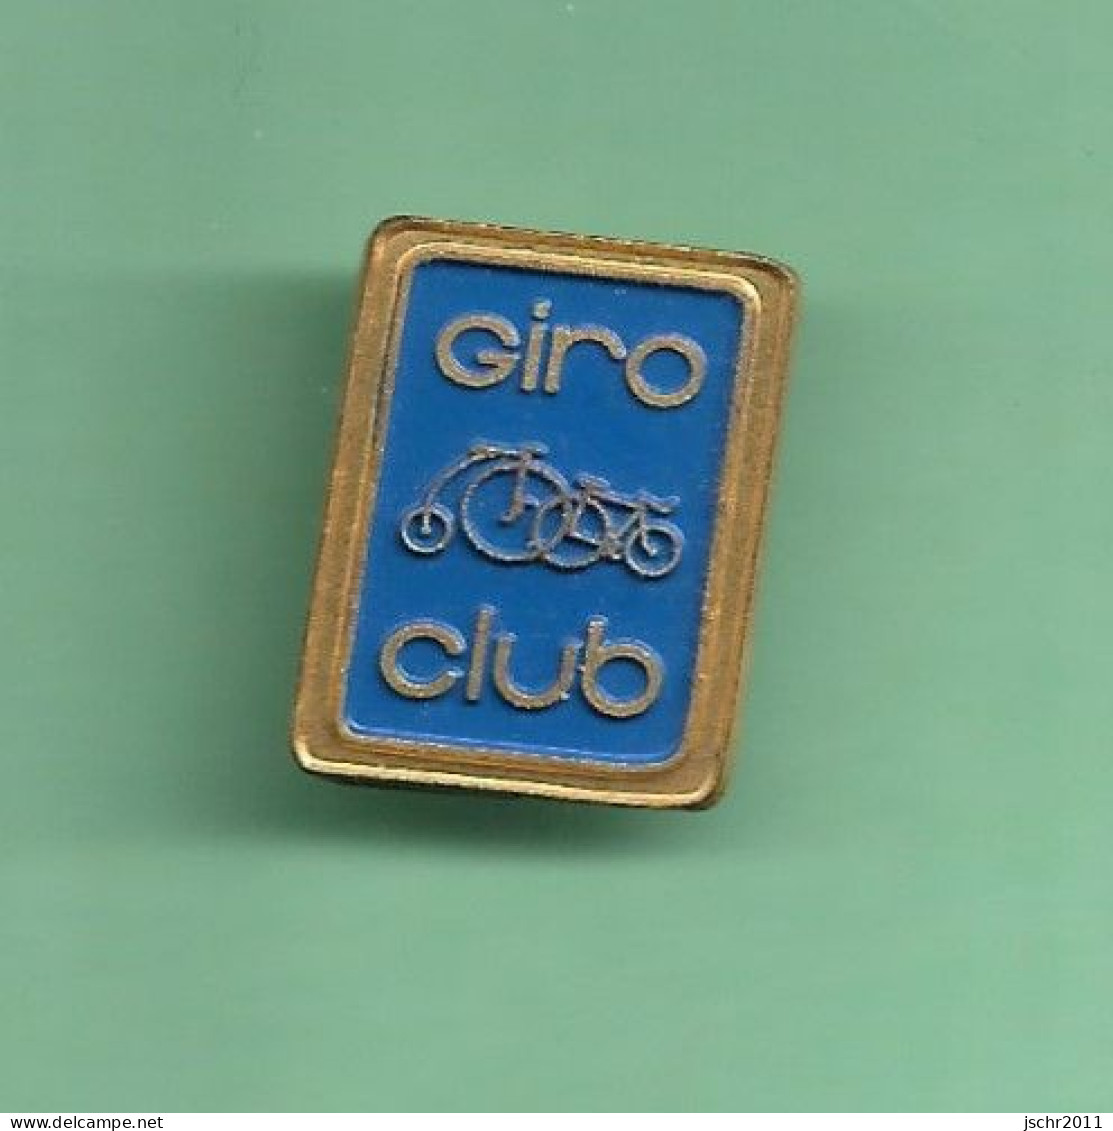 1 Pin's CYCLISME *** GIRO CLUB *** WW02 (21-1) - Wielrennen